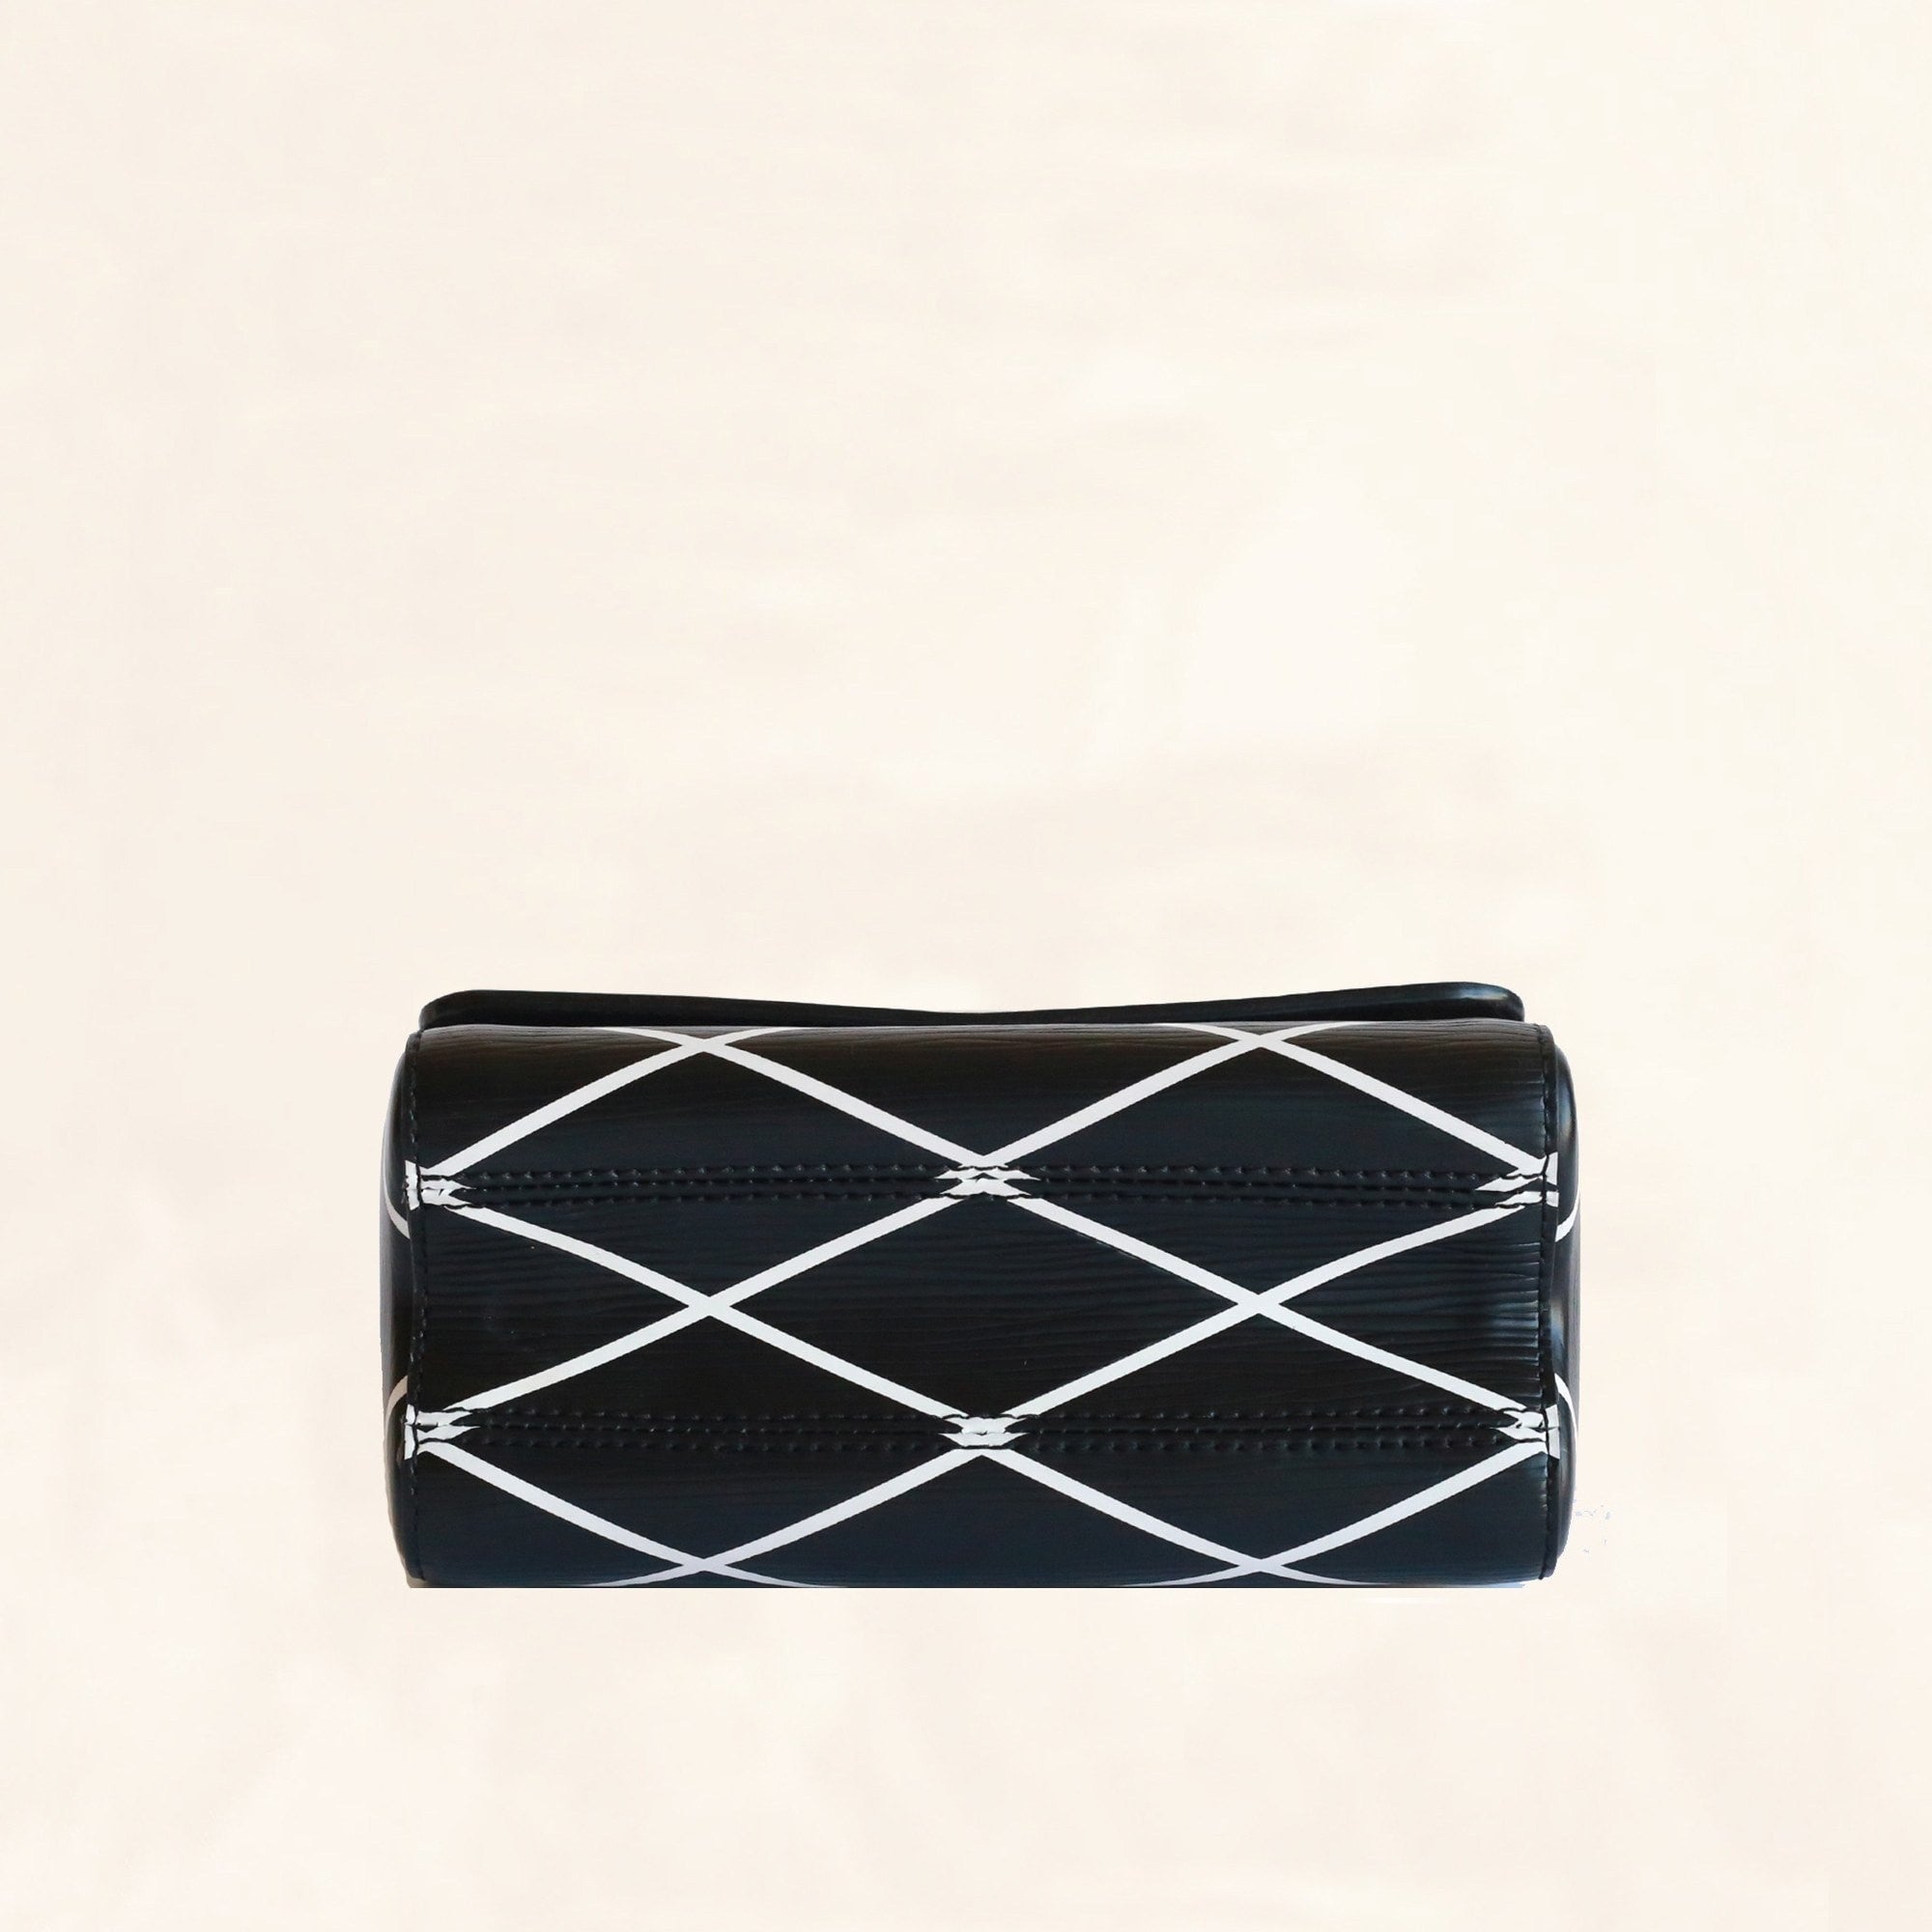 Louis Vuitton Black/White Malletage Epi Leather Twist PM Bag at